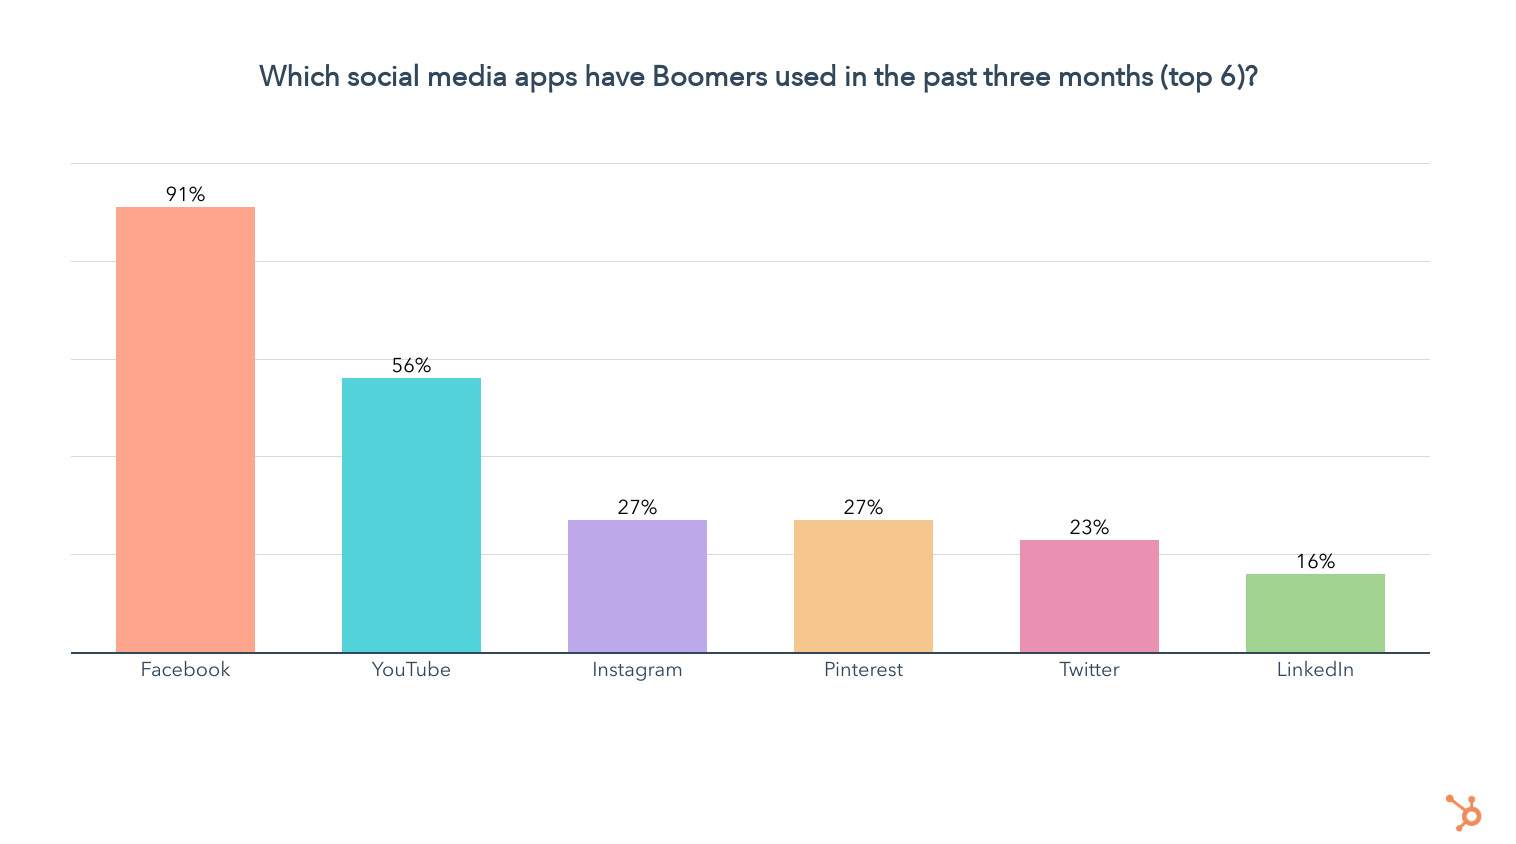 91% Baby Boomer sử dụng mạng xã hội là trên Facebook, cao hơn bất kỳ thế hệ nào khác.